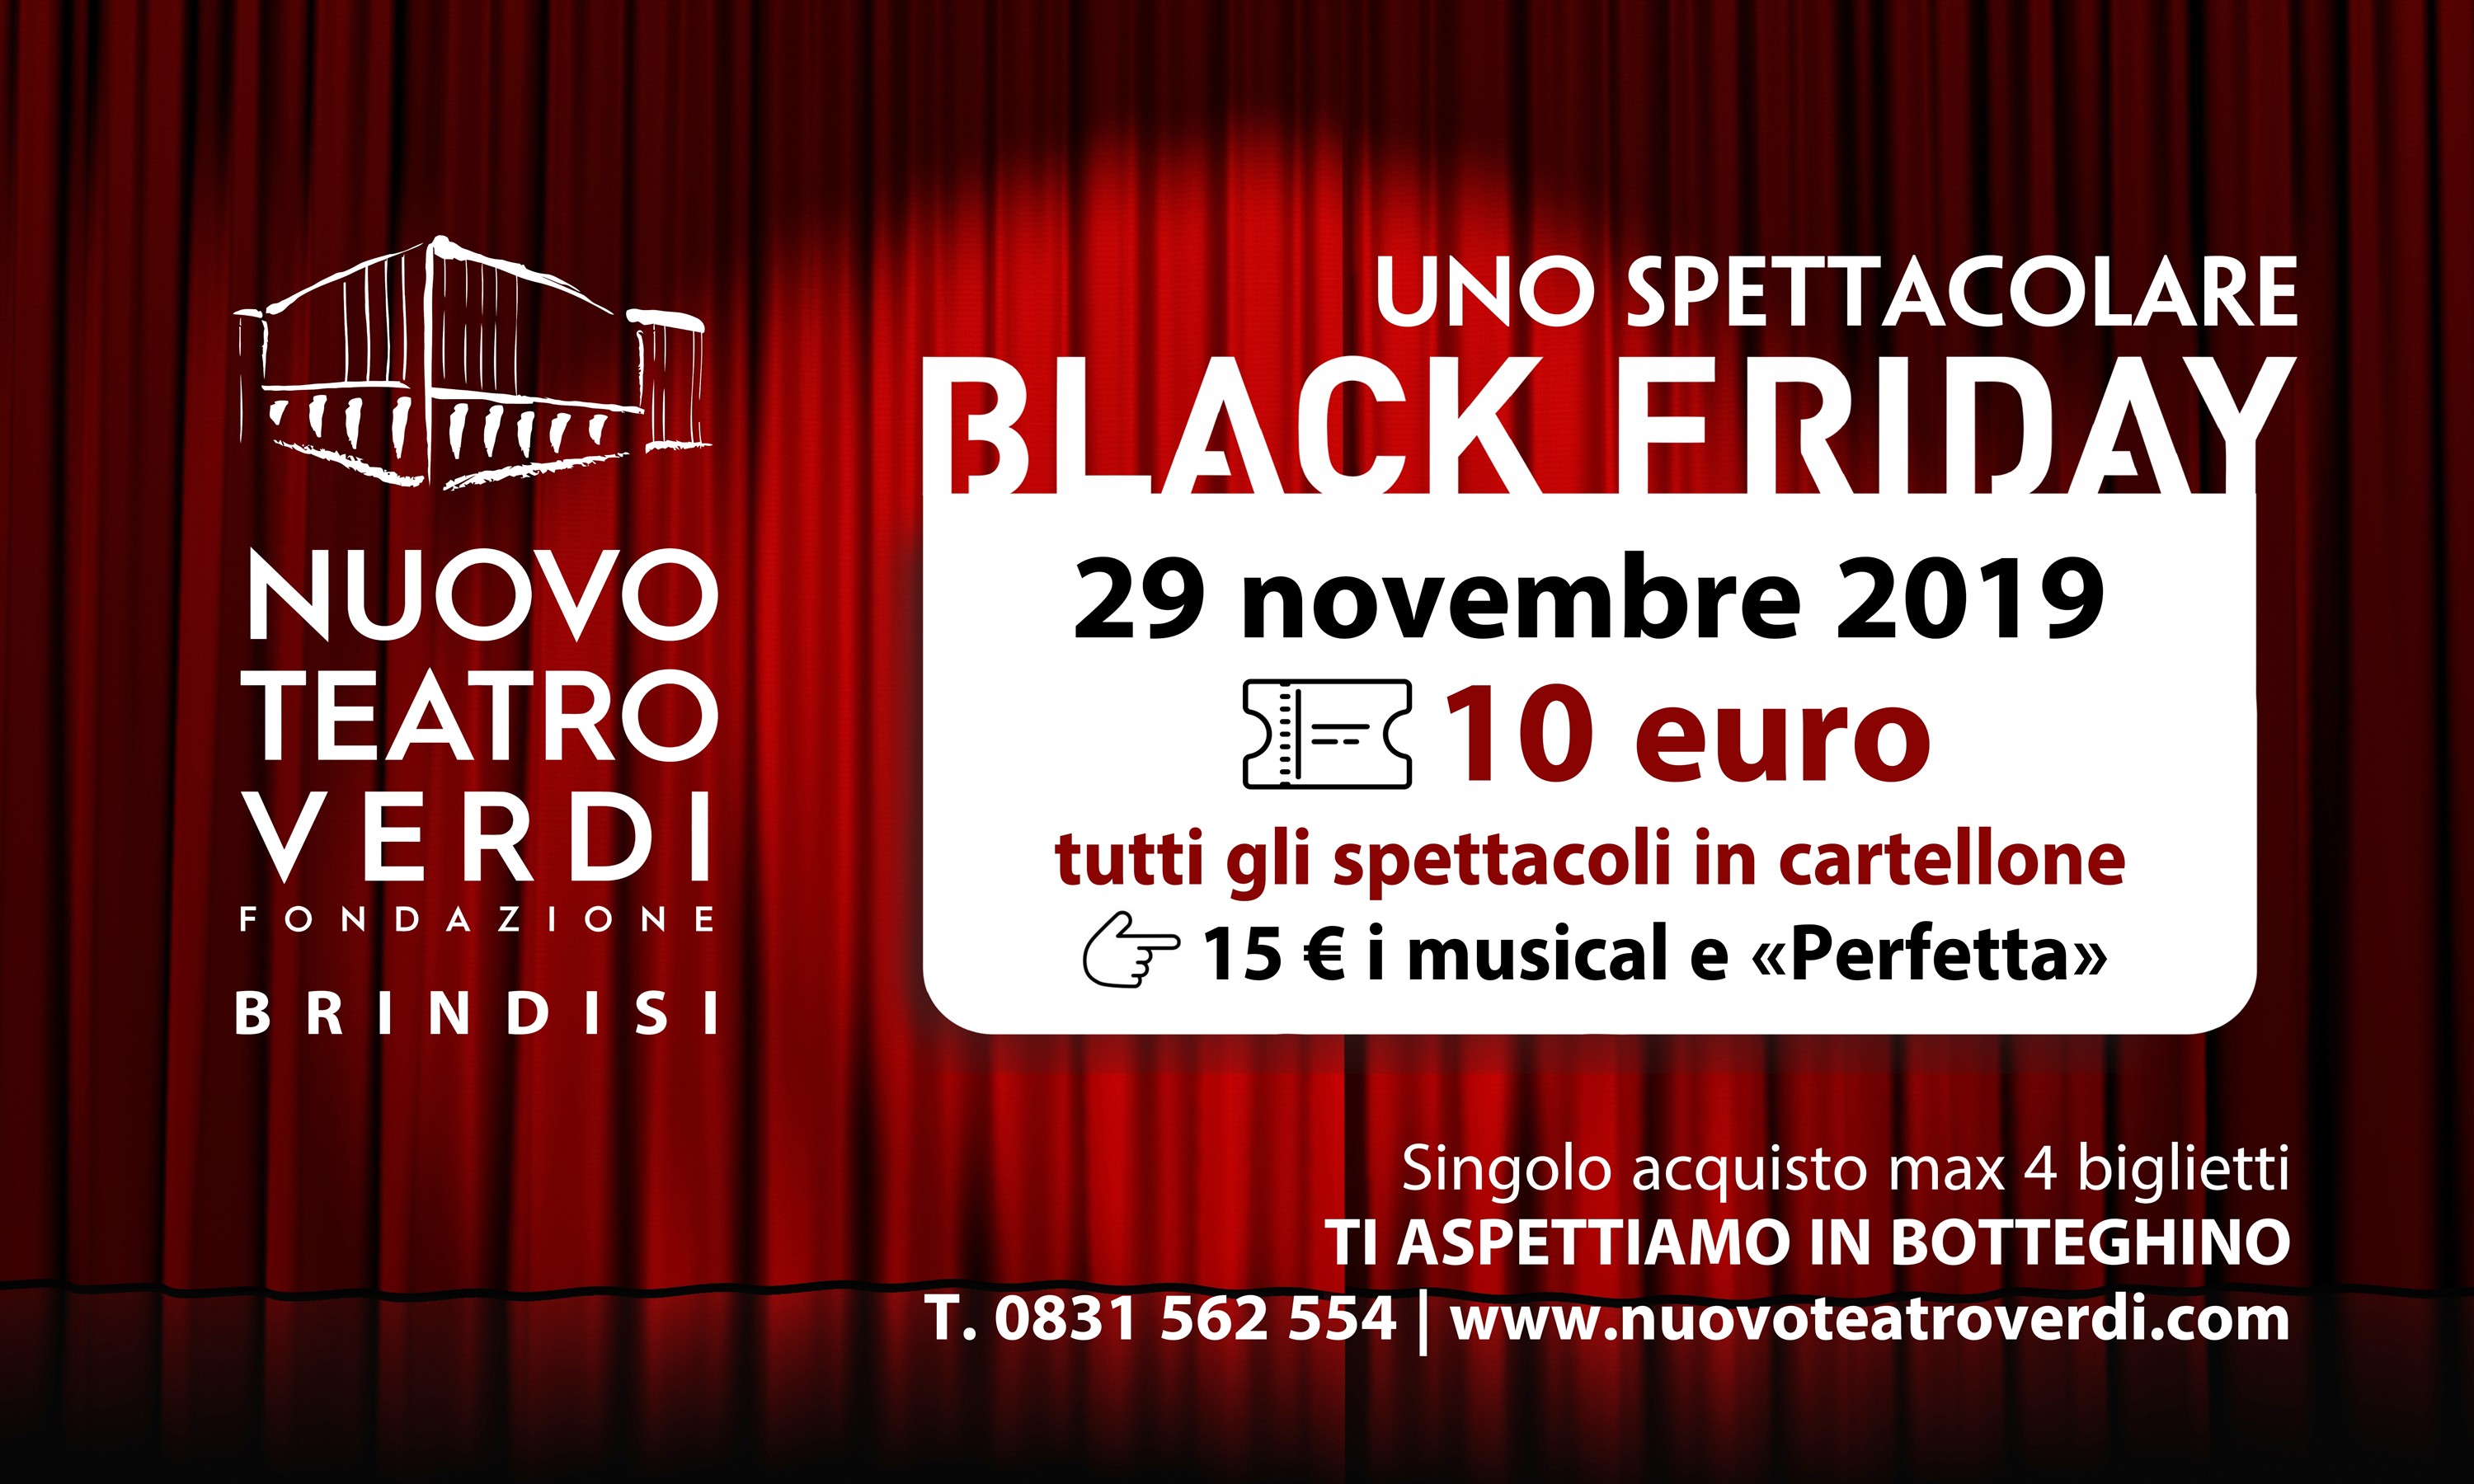 Il Black Friday del Nuovo Teatro Verdi: biglietti a prezzo promo nel “venerdì nero” degli acquisti